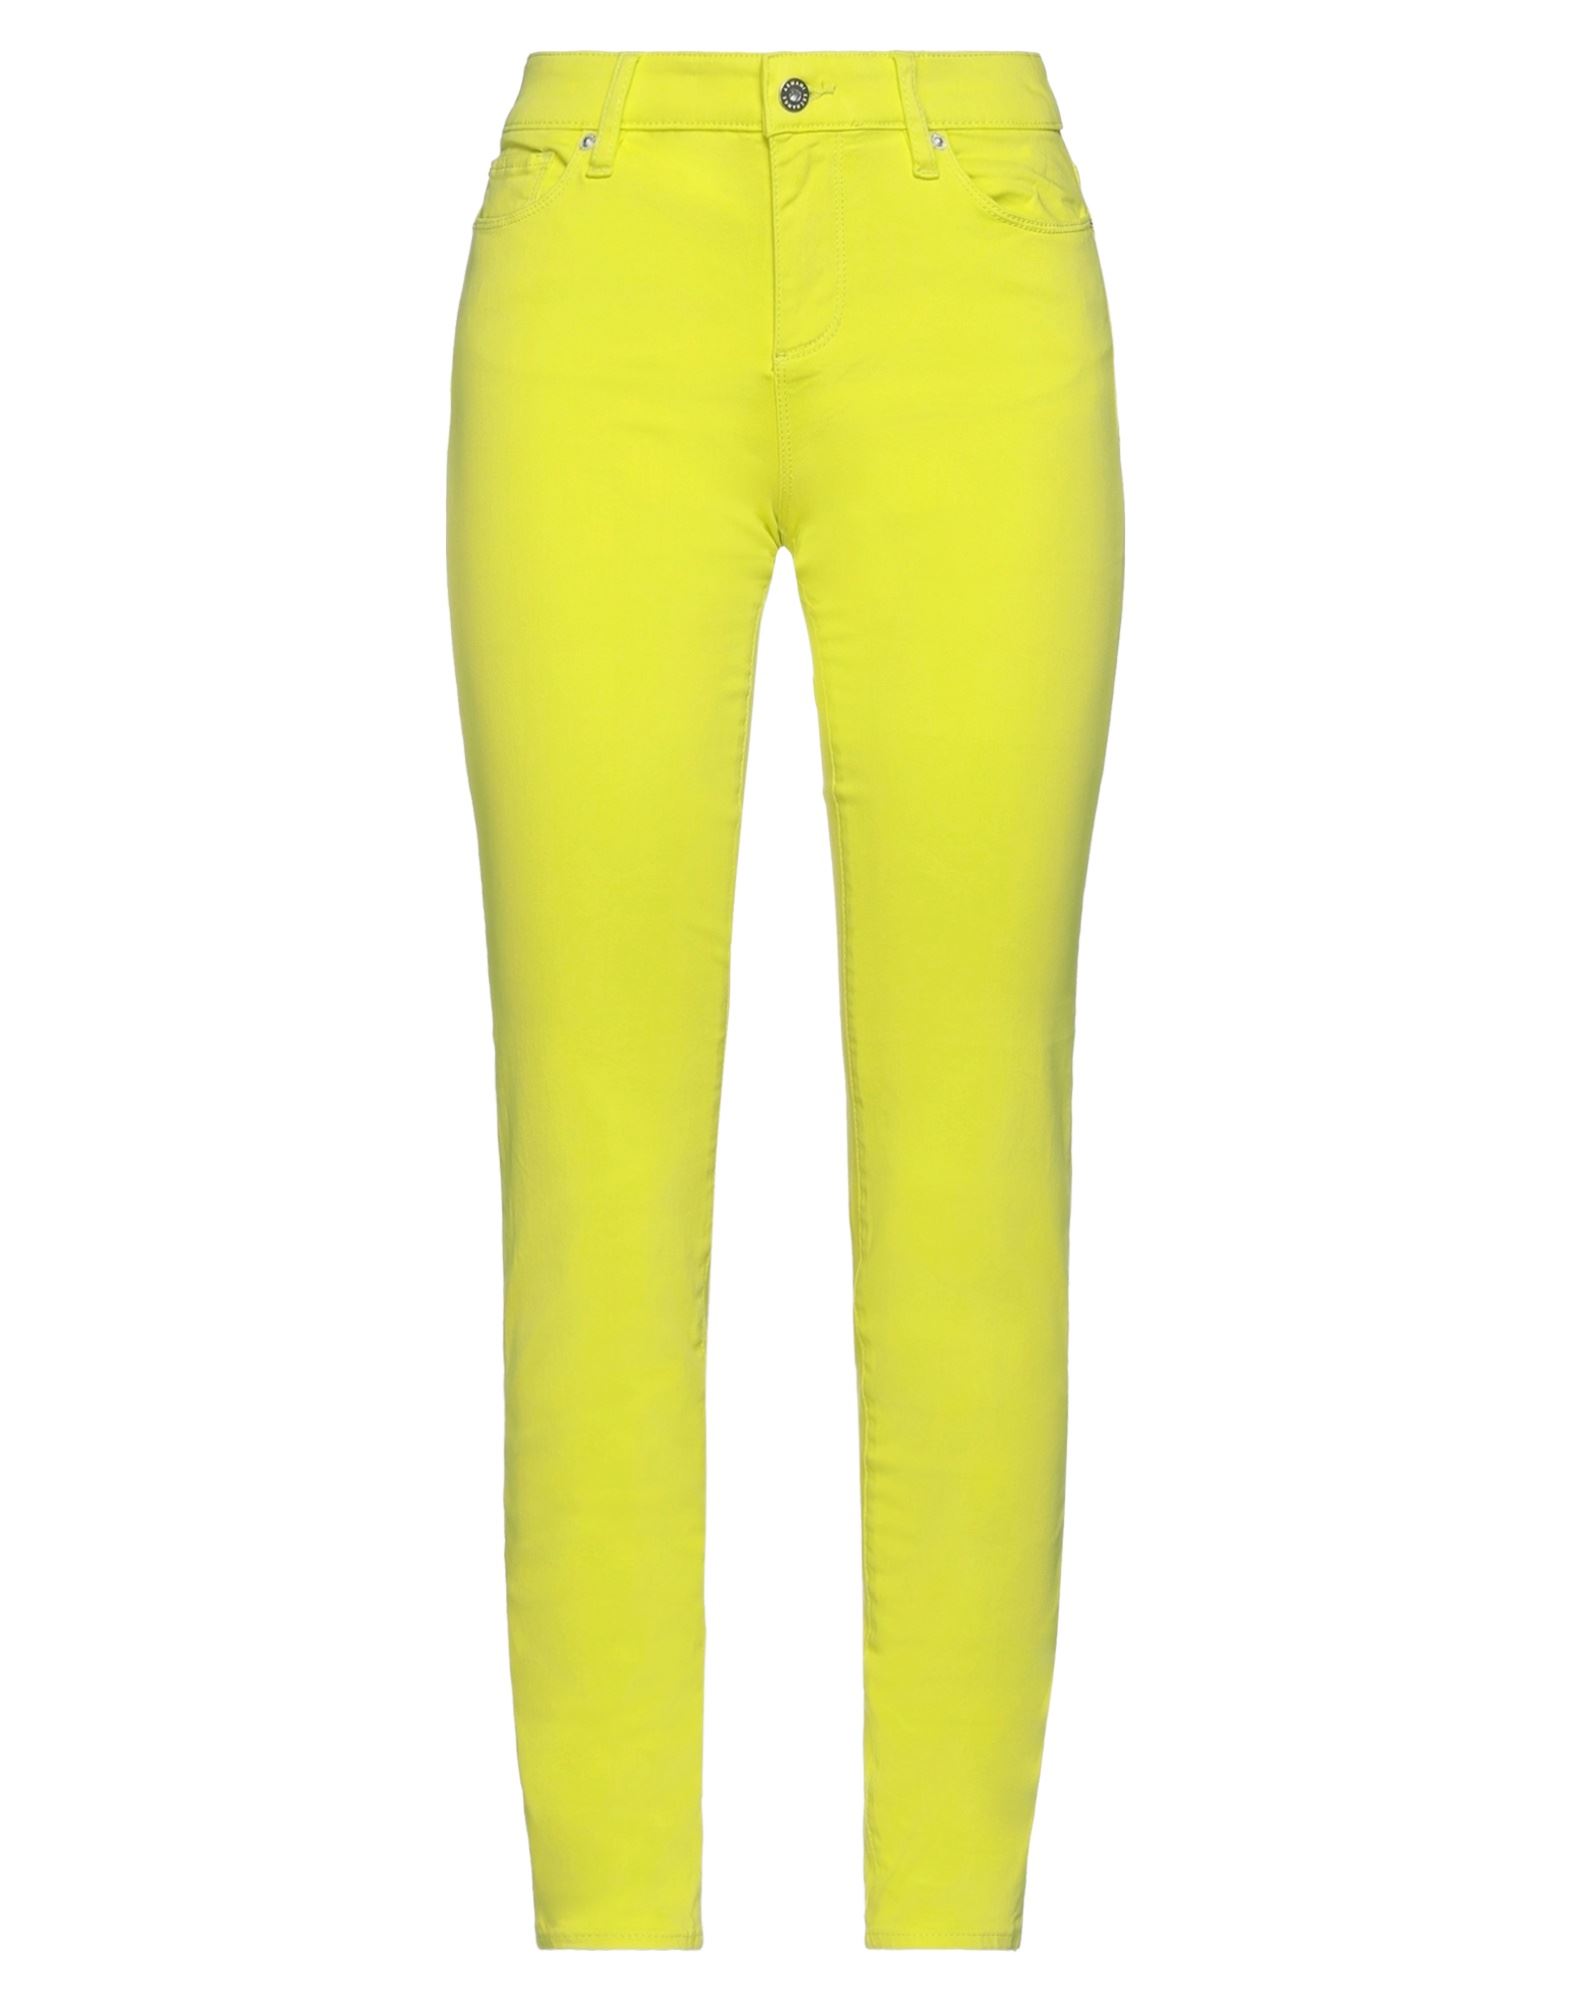 Armani Exchange Pants In Yellow